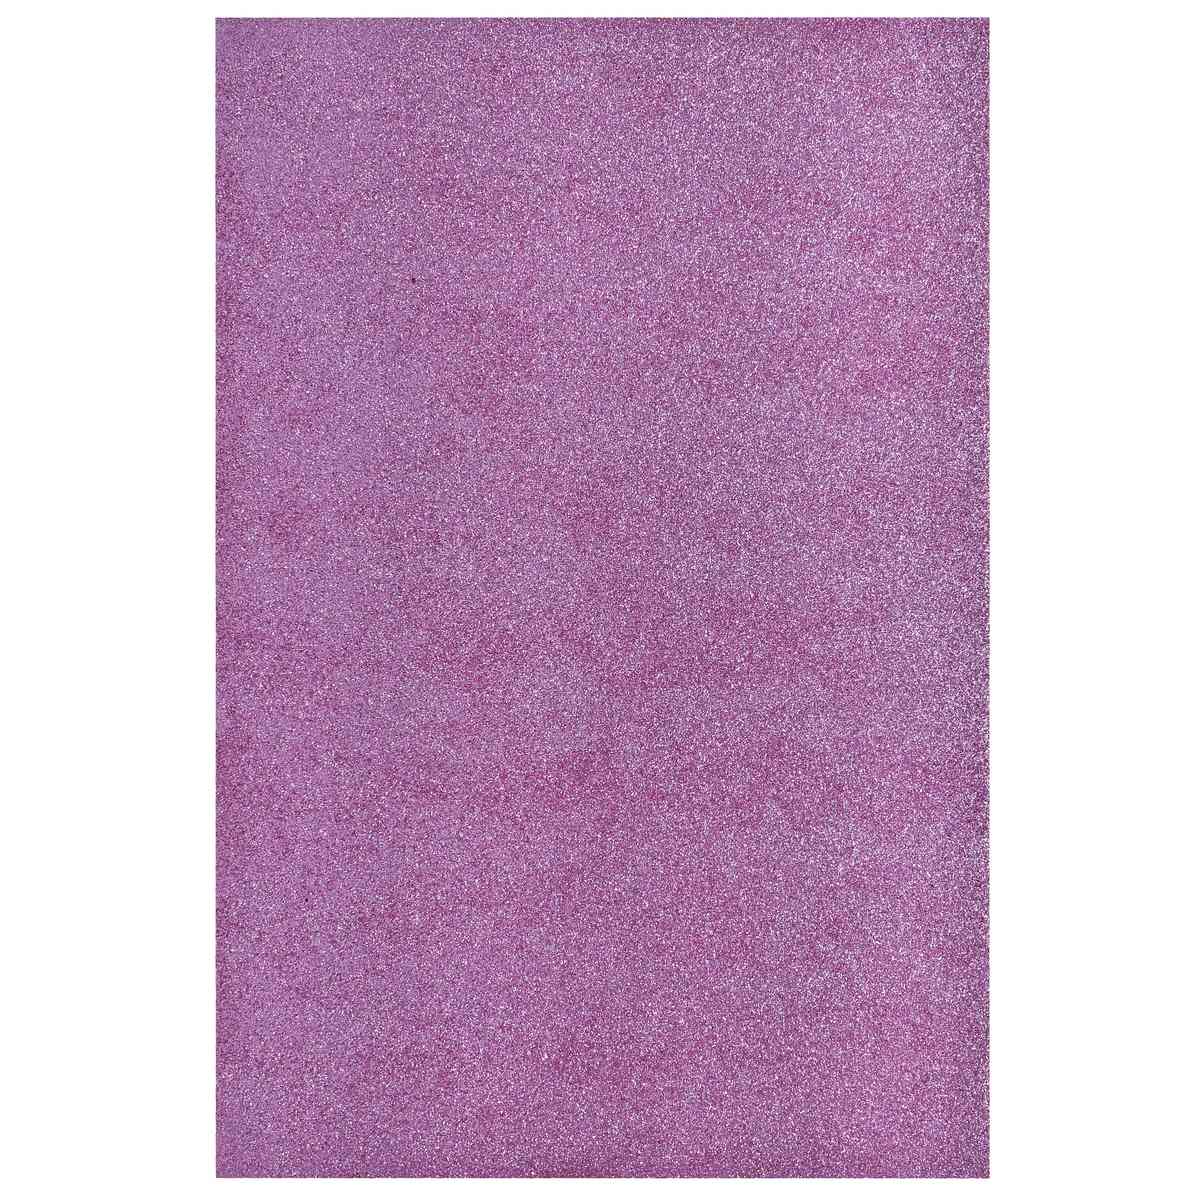 jags-mumbai Glitter Paper & Foam Sheet A4 Glitter Foam Sheet Without Stk B Pink 00196BPK